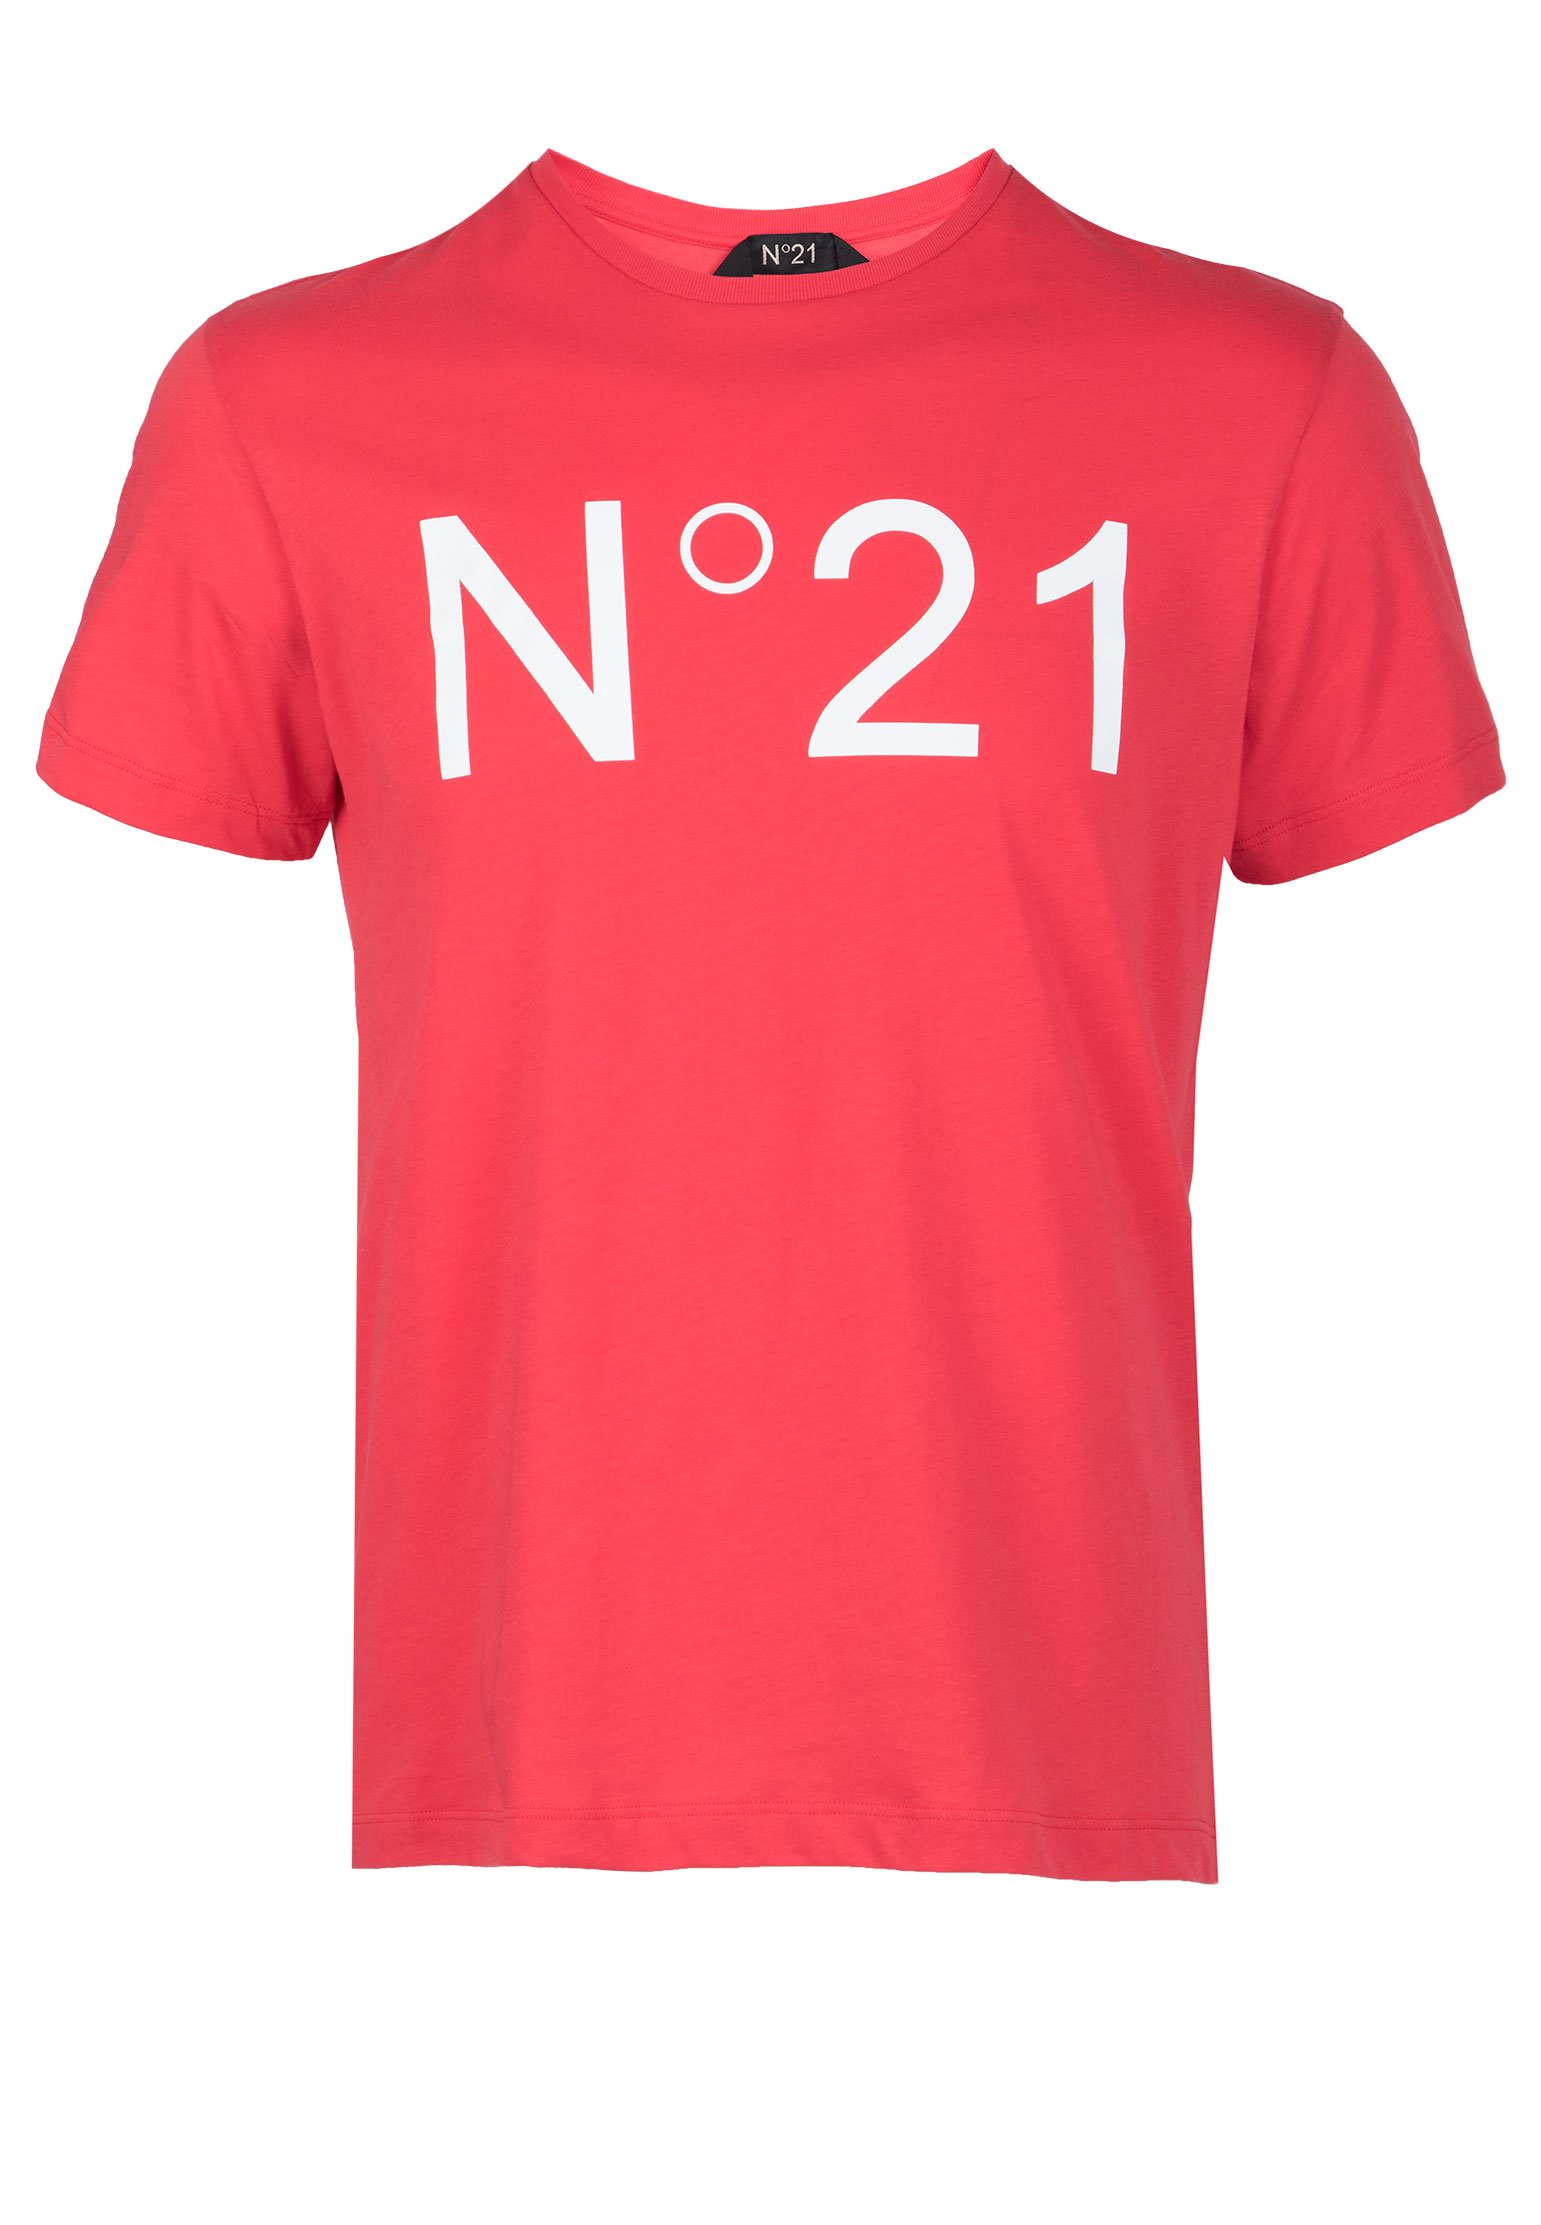 

Футболка No21, Красный, Красный